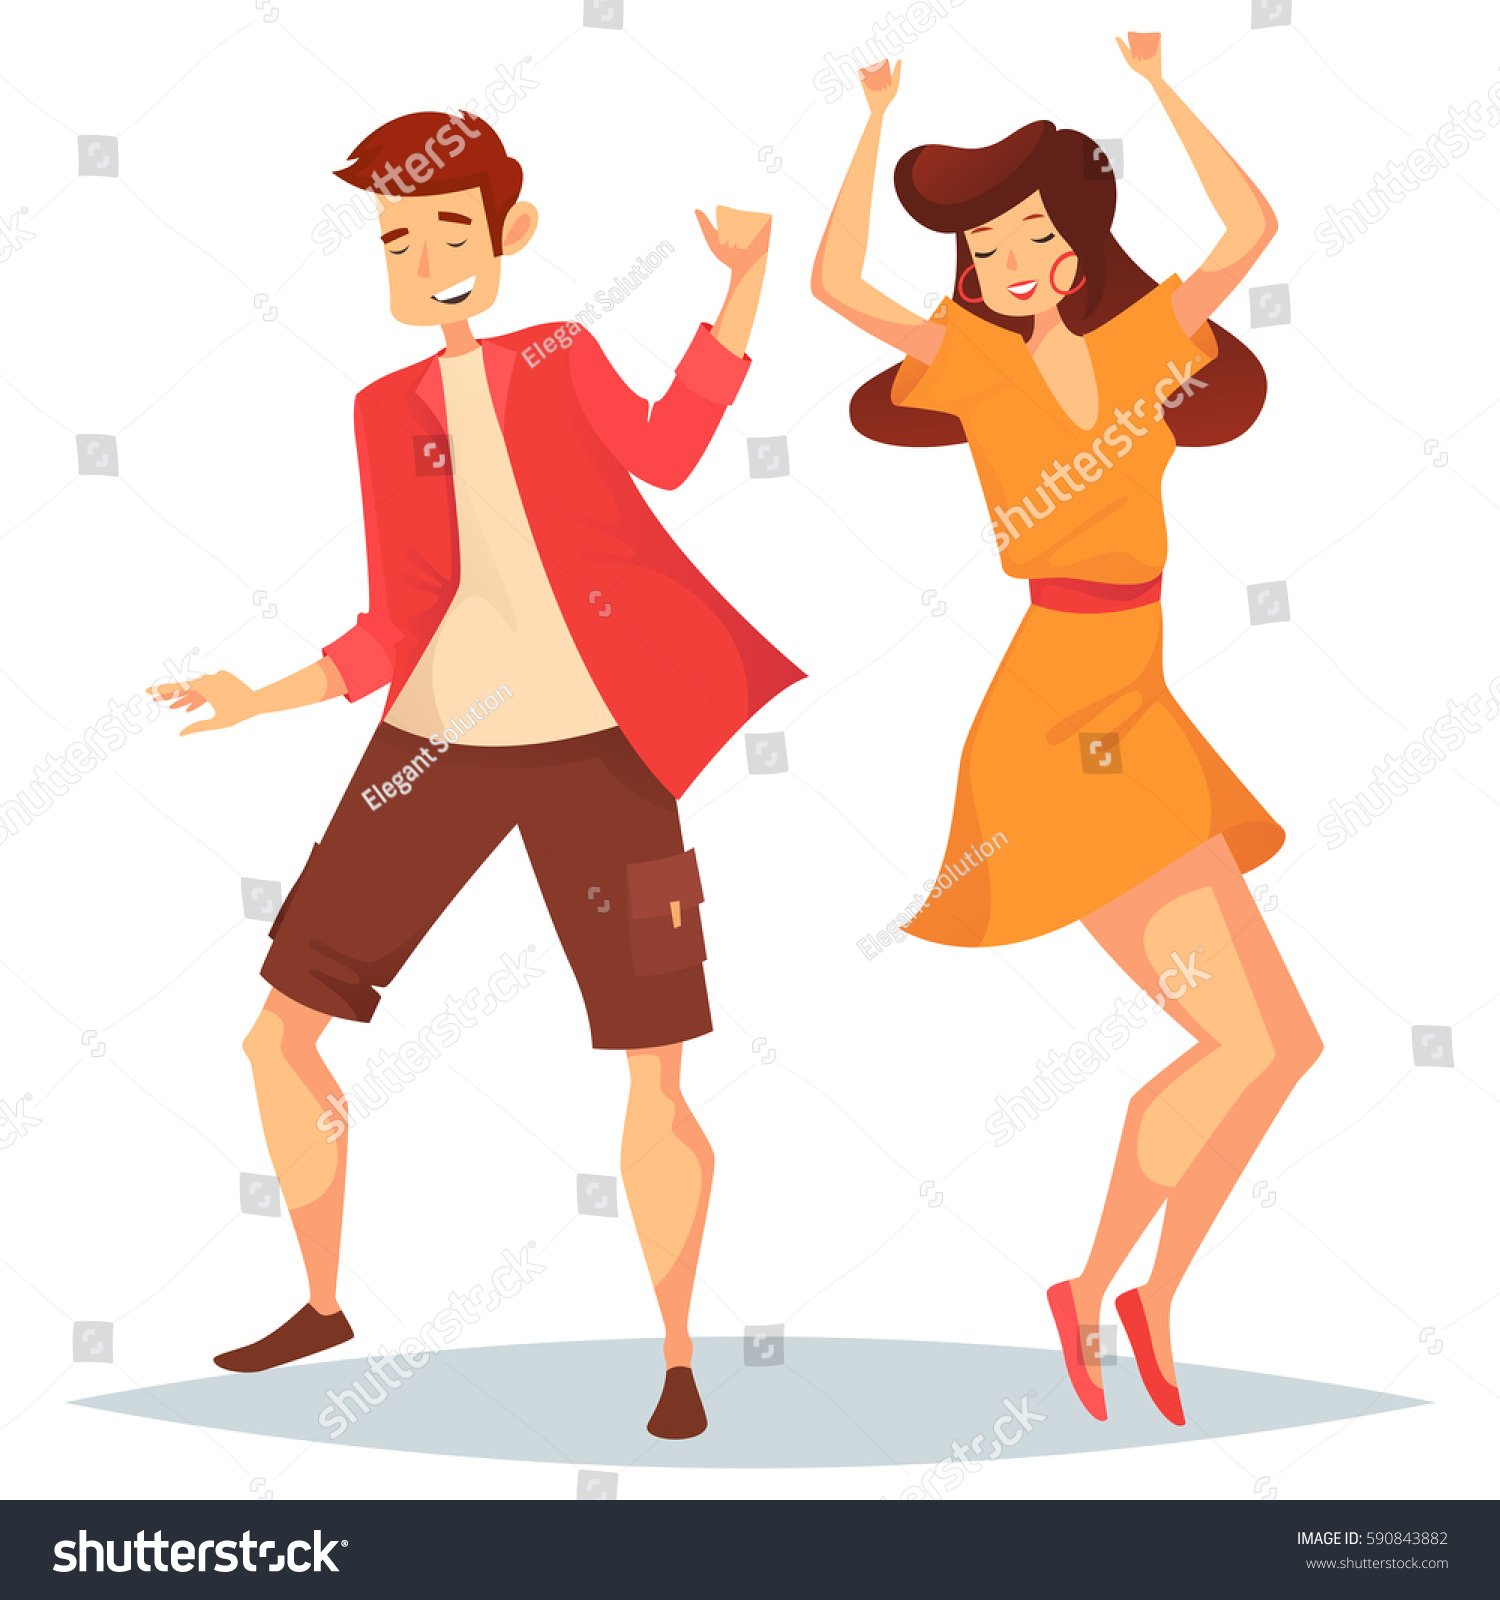 Woman Raised Hands Man Dancing Girl Stock Vector 590843882 - Shutterstock